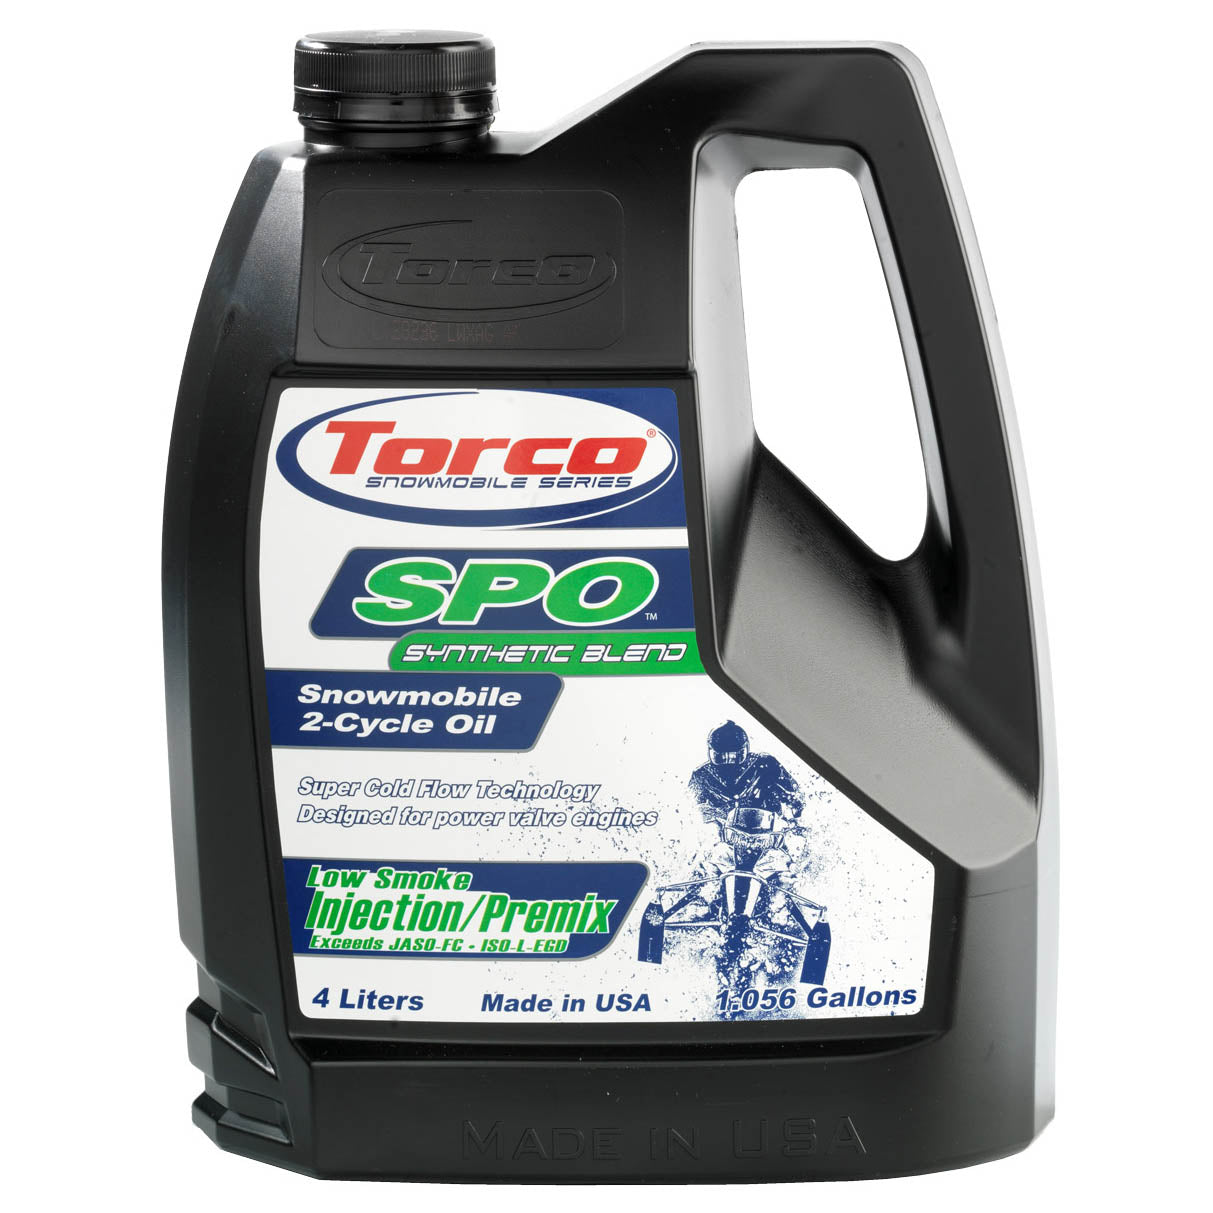 Torco SPO Snowmobile 2 stroke Oil